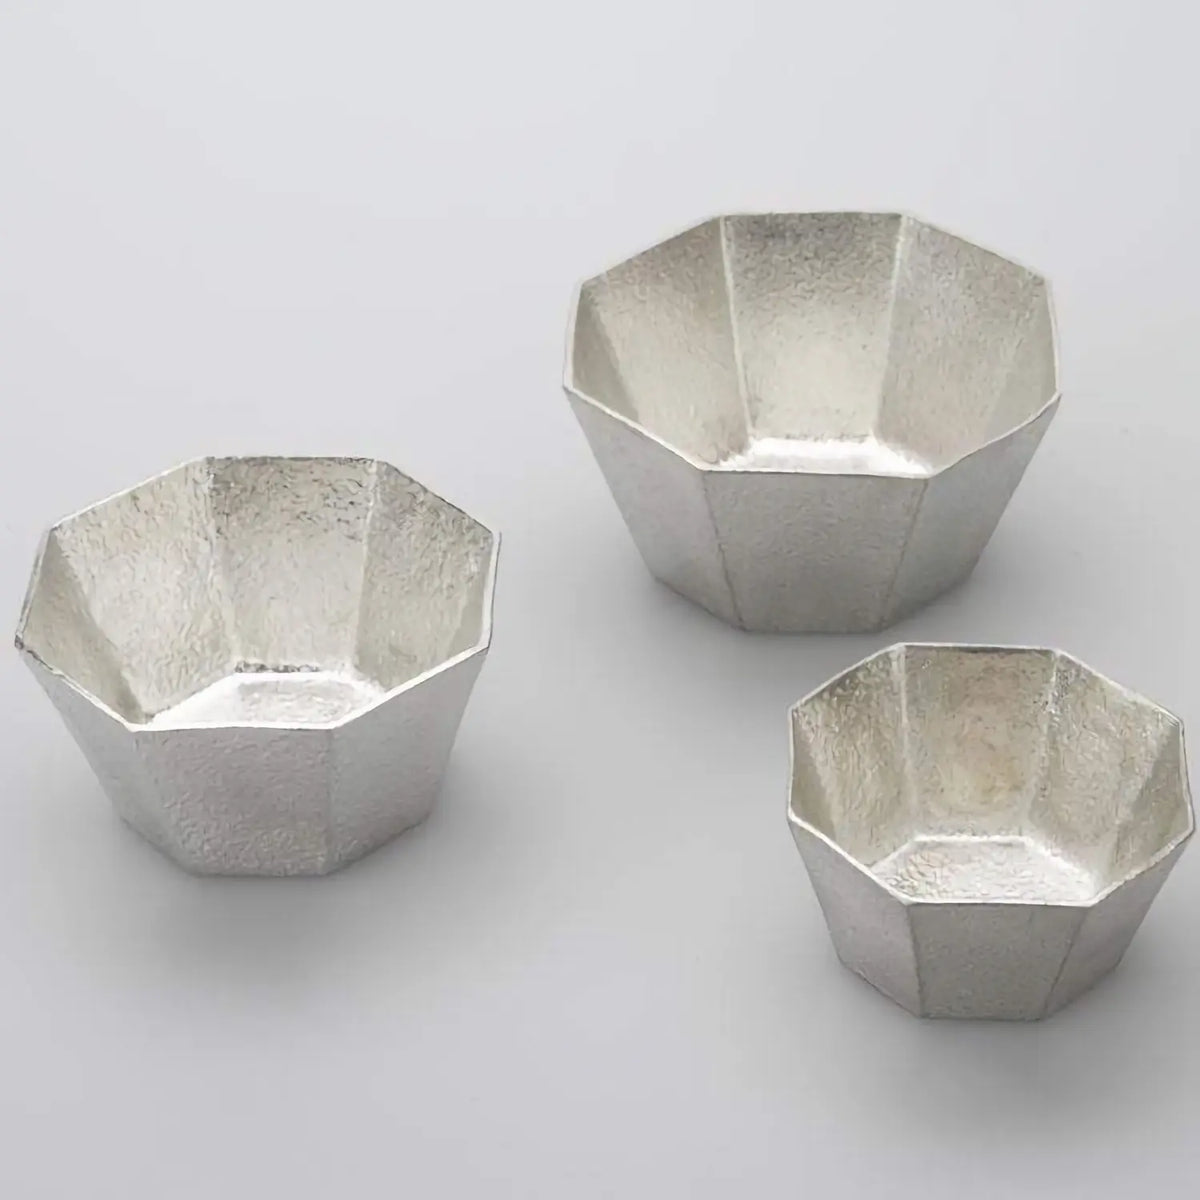 Nousaku Tinware Small Bowl Kuzushi Ori